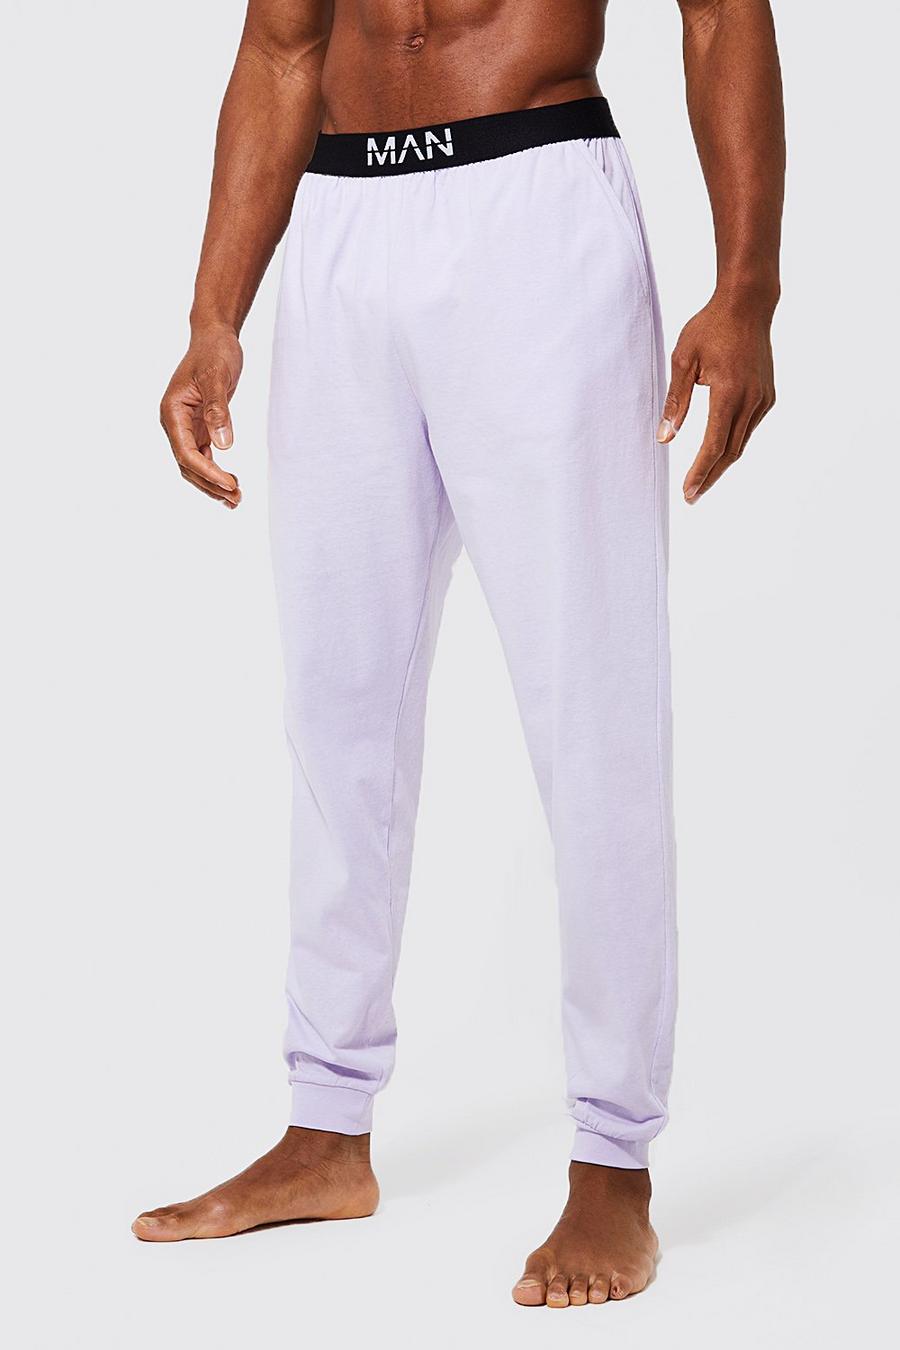 Lilac viola Core Man Dash Loungewear Pants